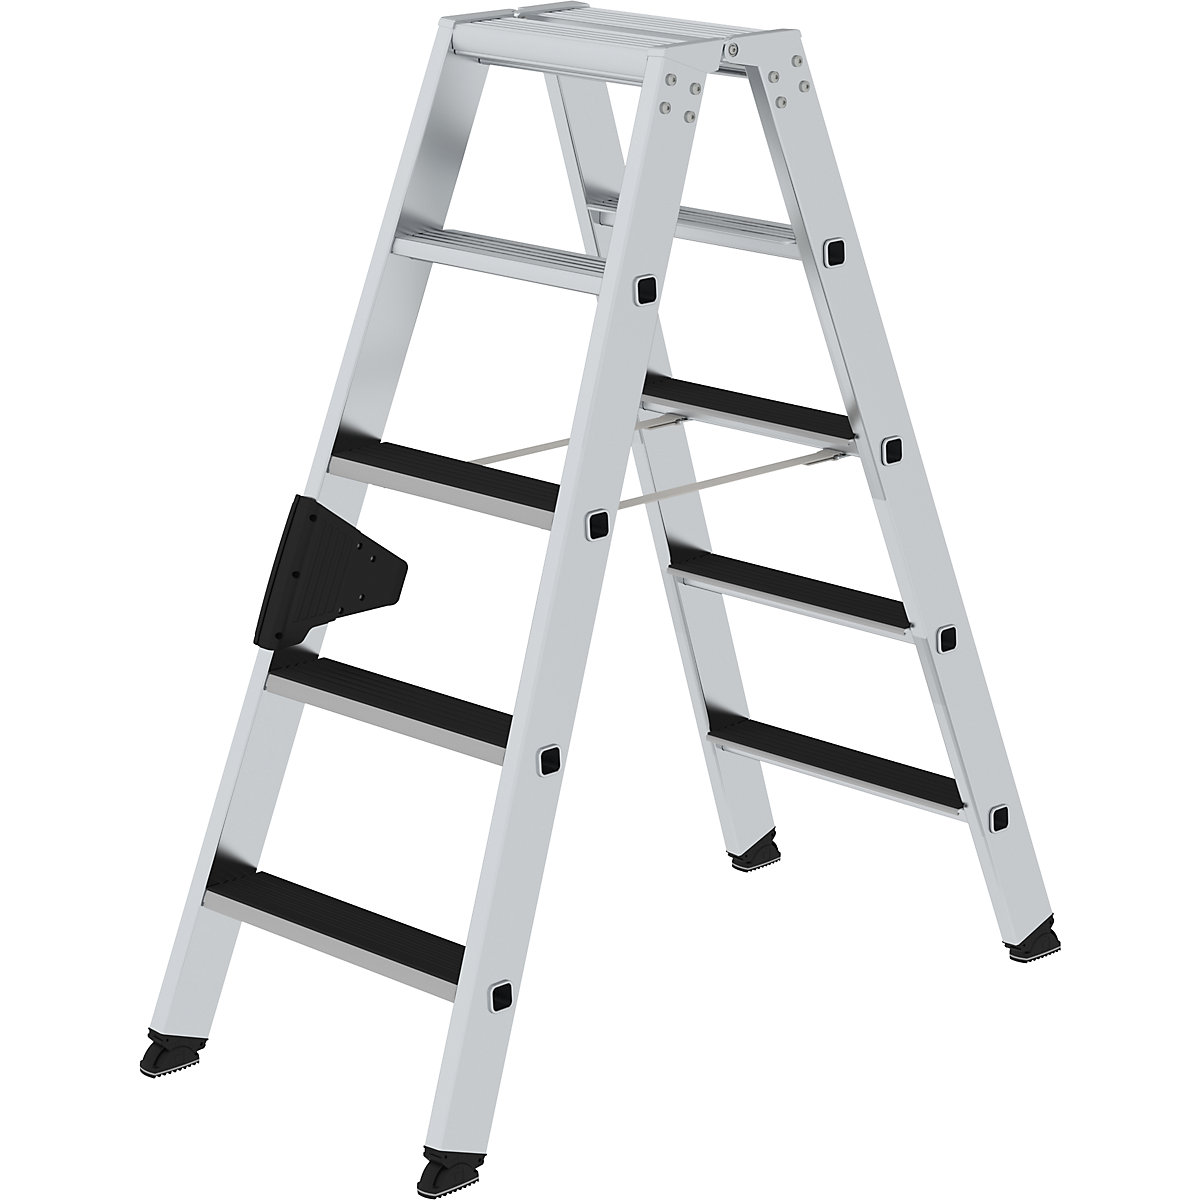 MUNK Stufen-Stehleiter CLIP-STEP, beidseitig begehbar, geriffelt, 2 x 5 Stufen